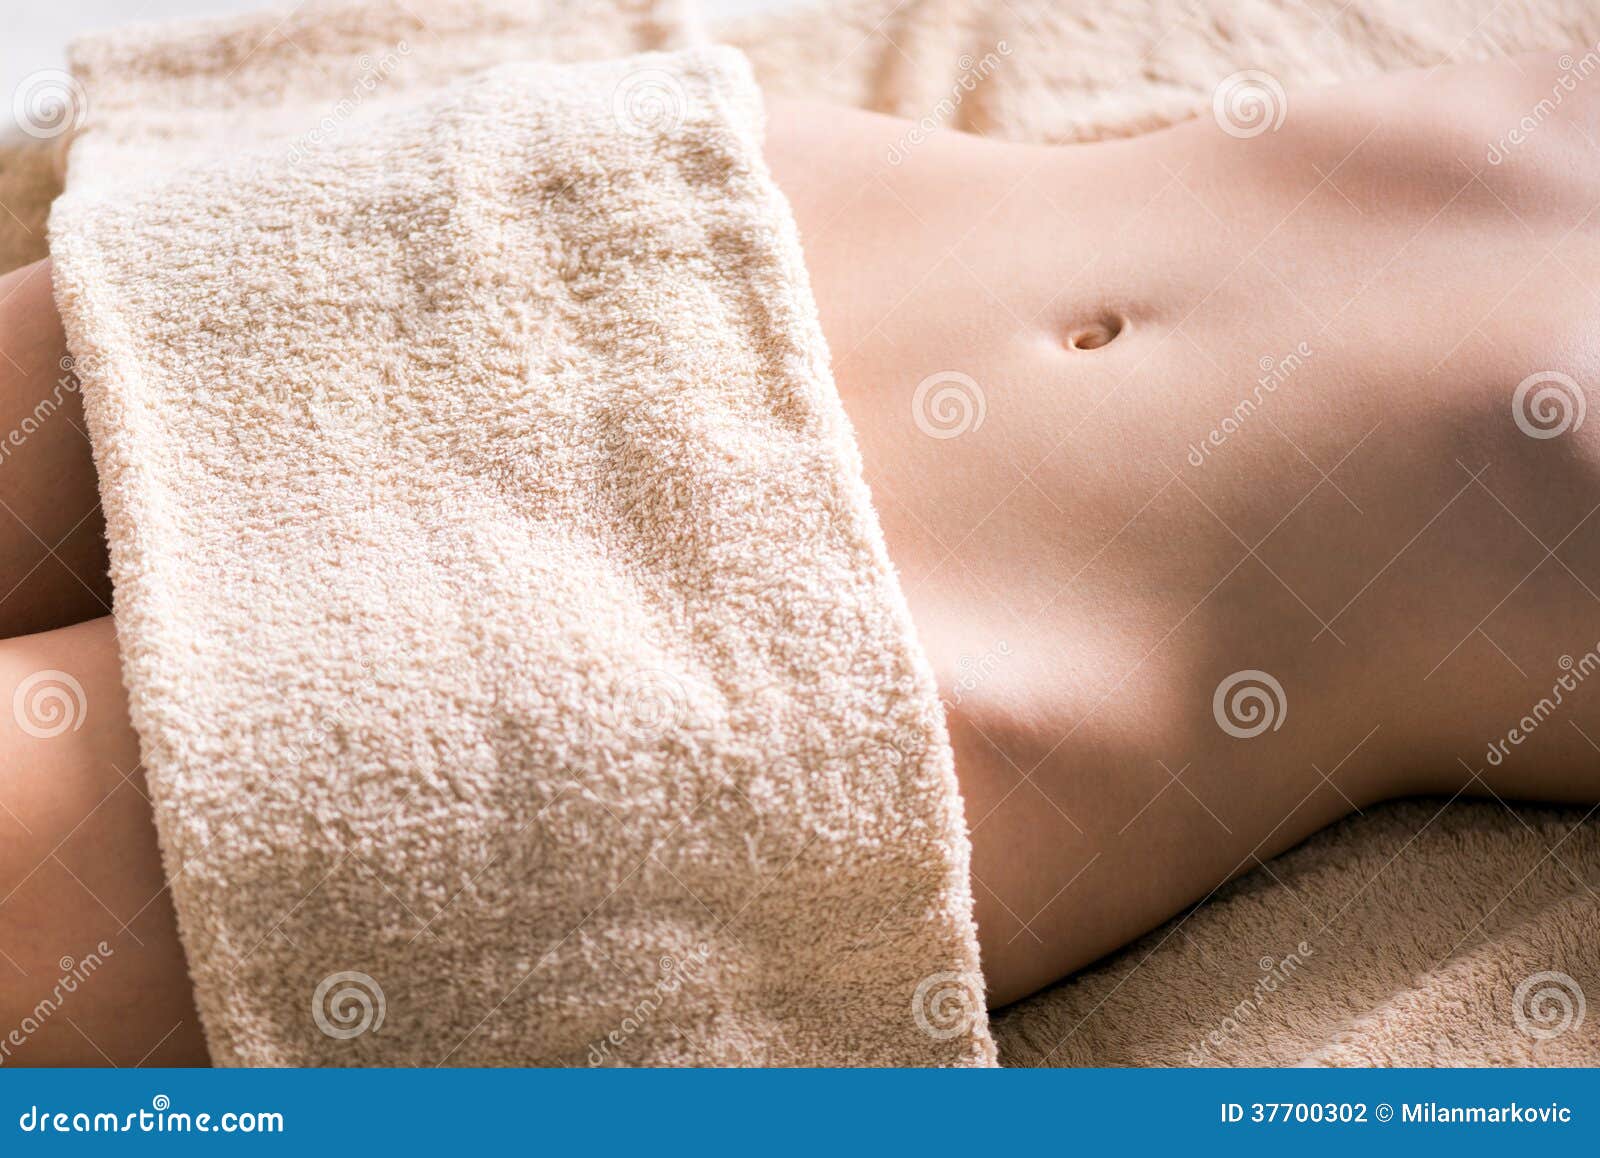 Живот полотенце. Женское тело в полотенце. Красивое женское тело в полотенце. Красивый животик в полотенце. Девушка прикрывается полотенцем.